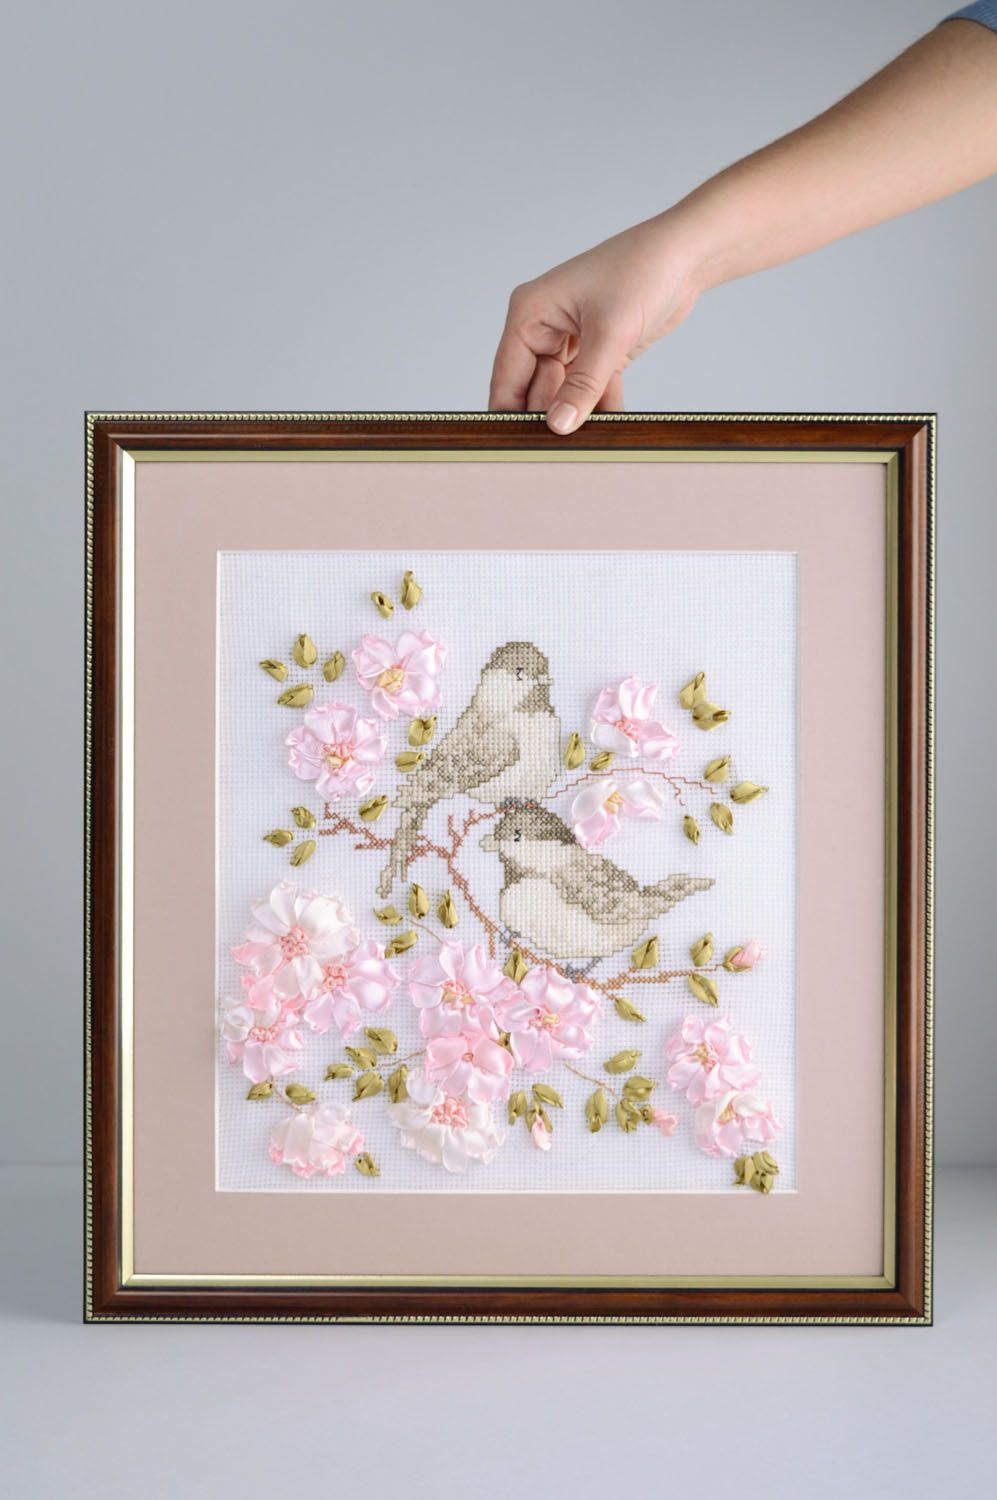 Textil Wandbild mit Stickerei Vögel foto 5